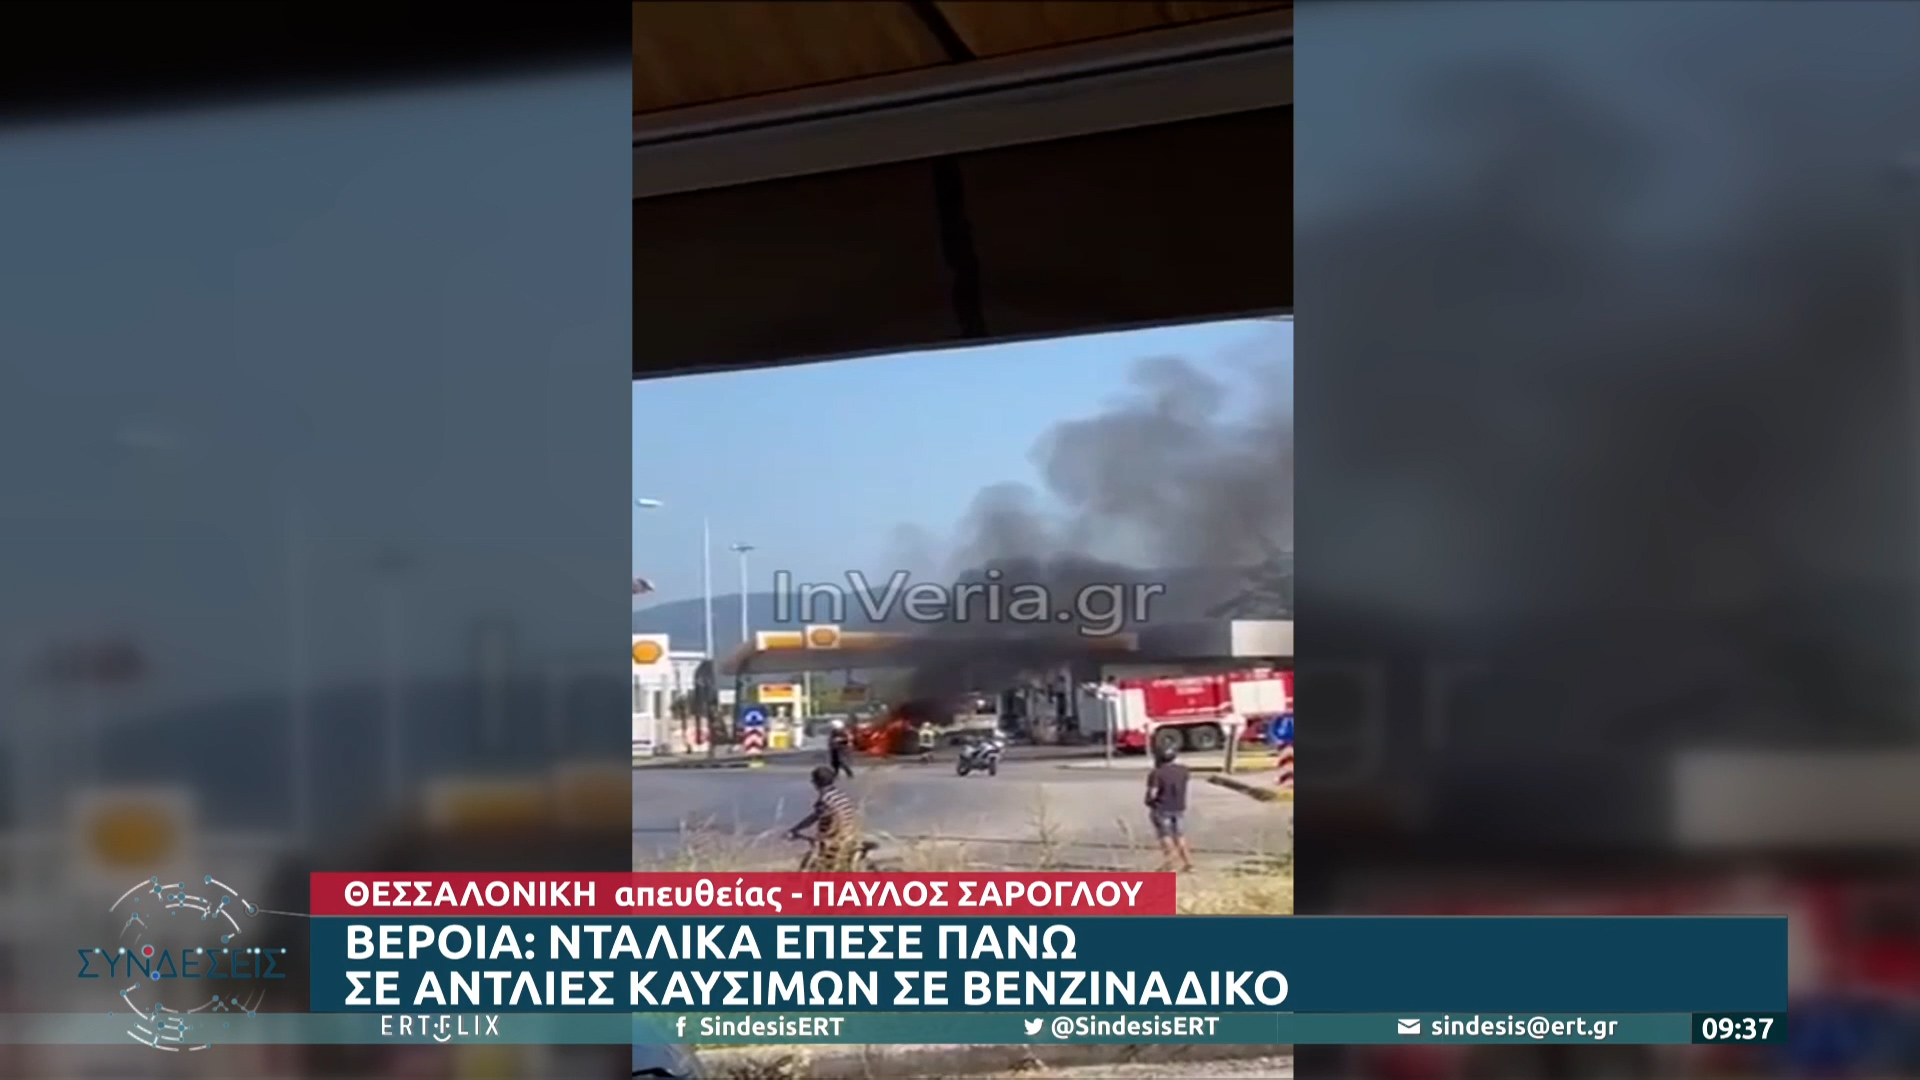 Βέροια: Ακυβέρνητη νταλίκα έπεσε σε πρατήριο καυσίμων προκαλώντας φωτιά (video)